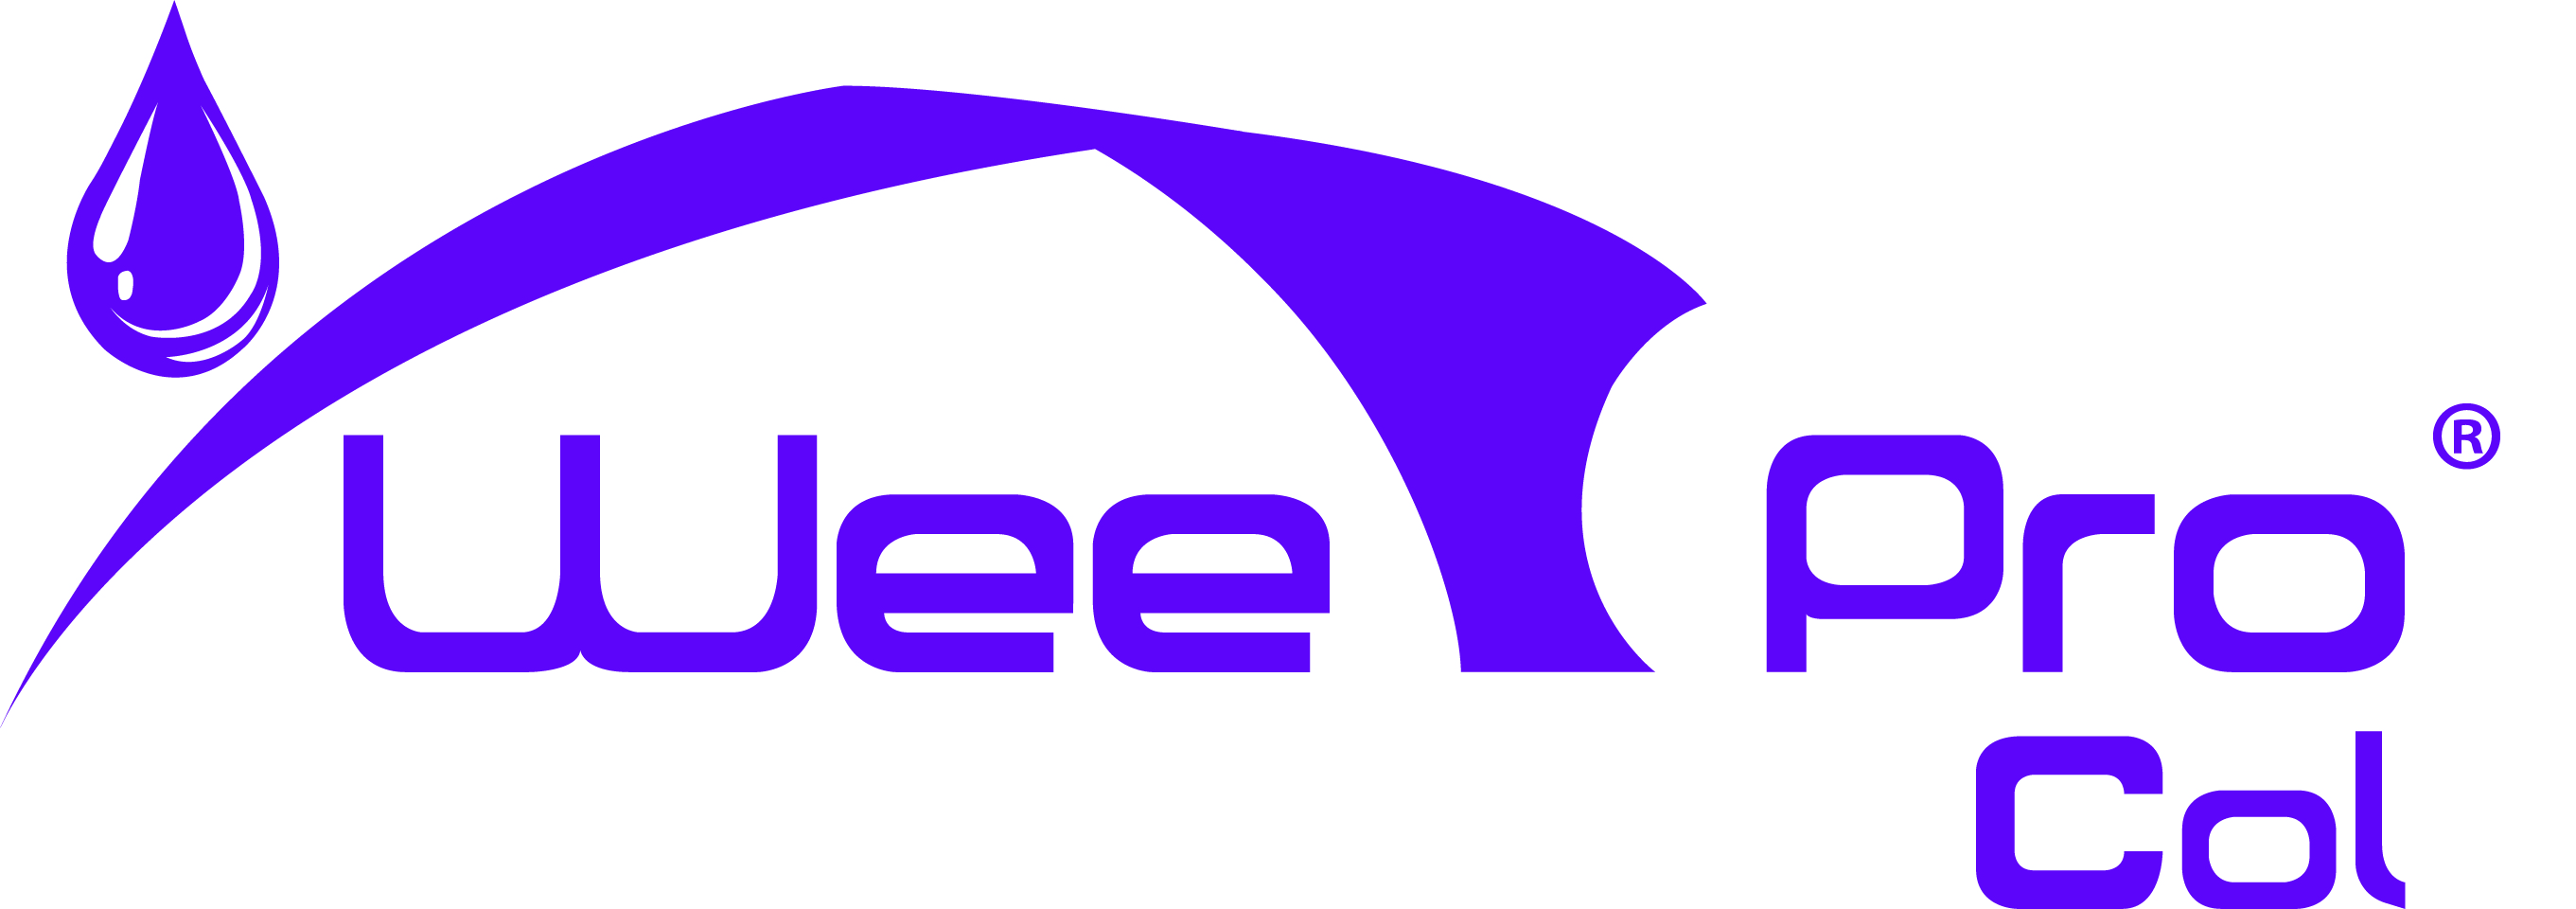 weepro logo